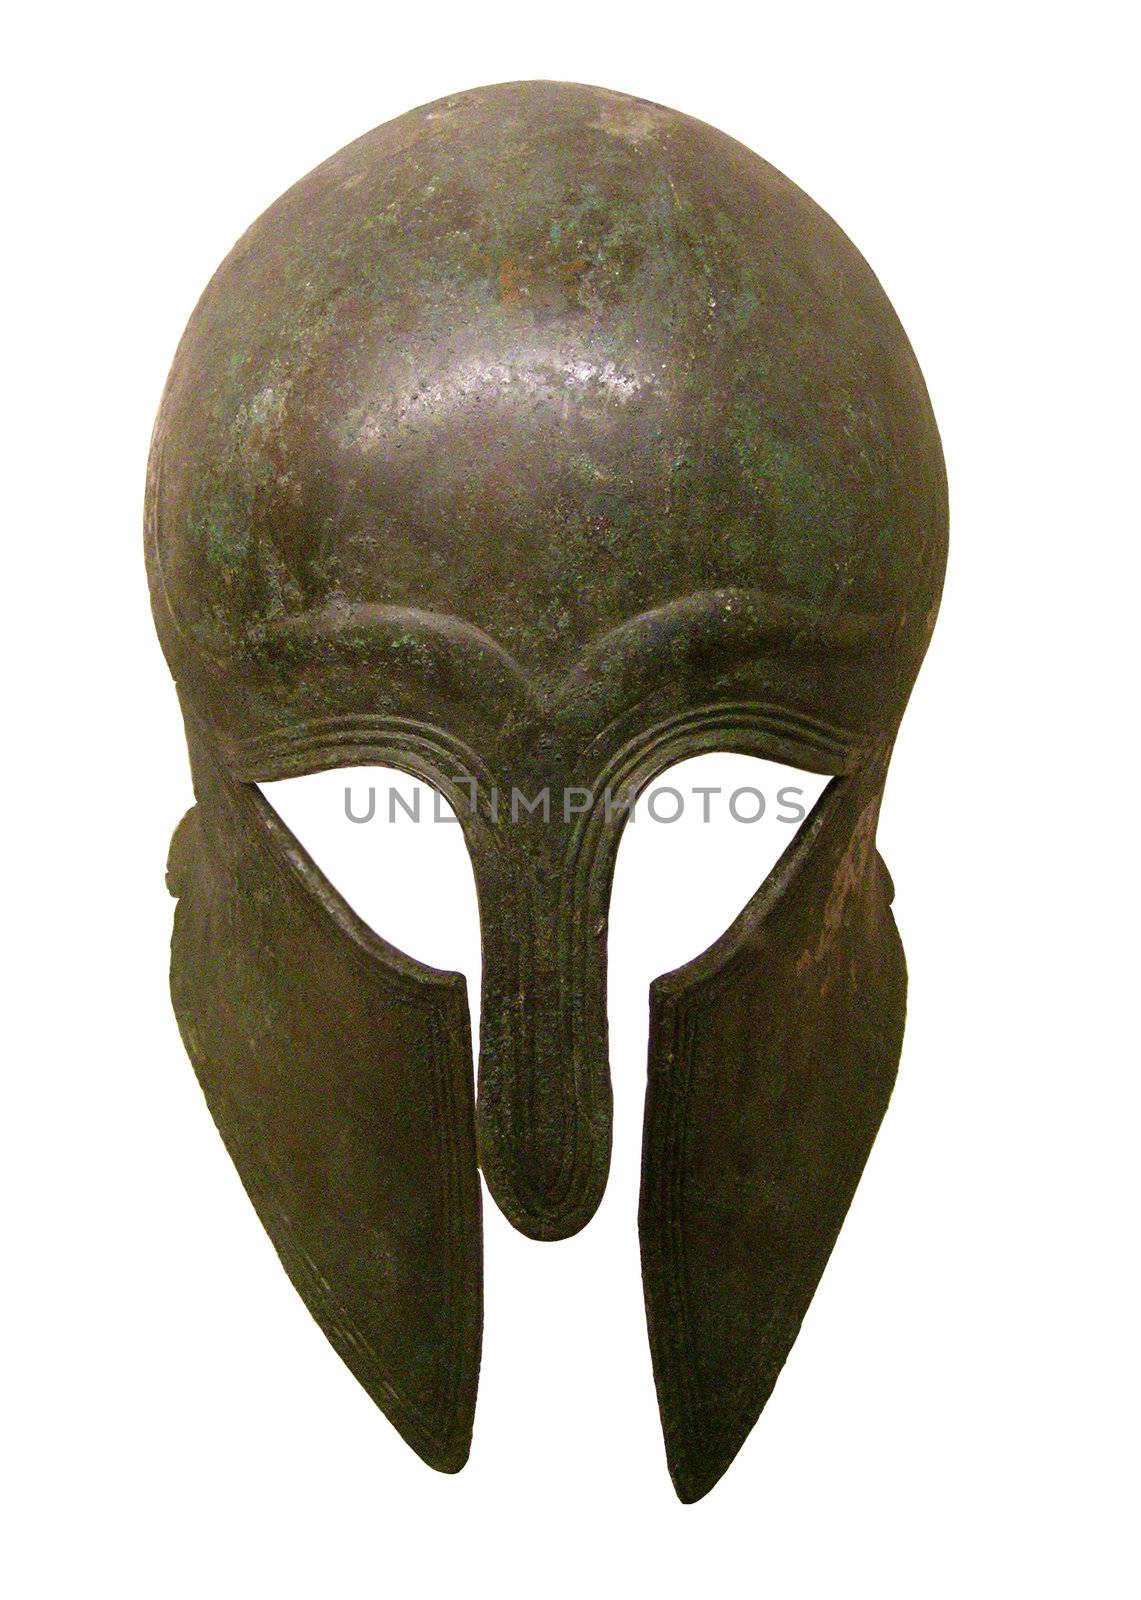 image of an ancient greek bronze helmet